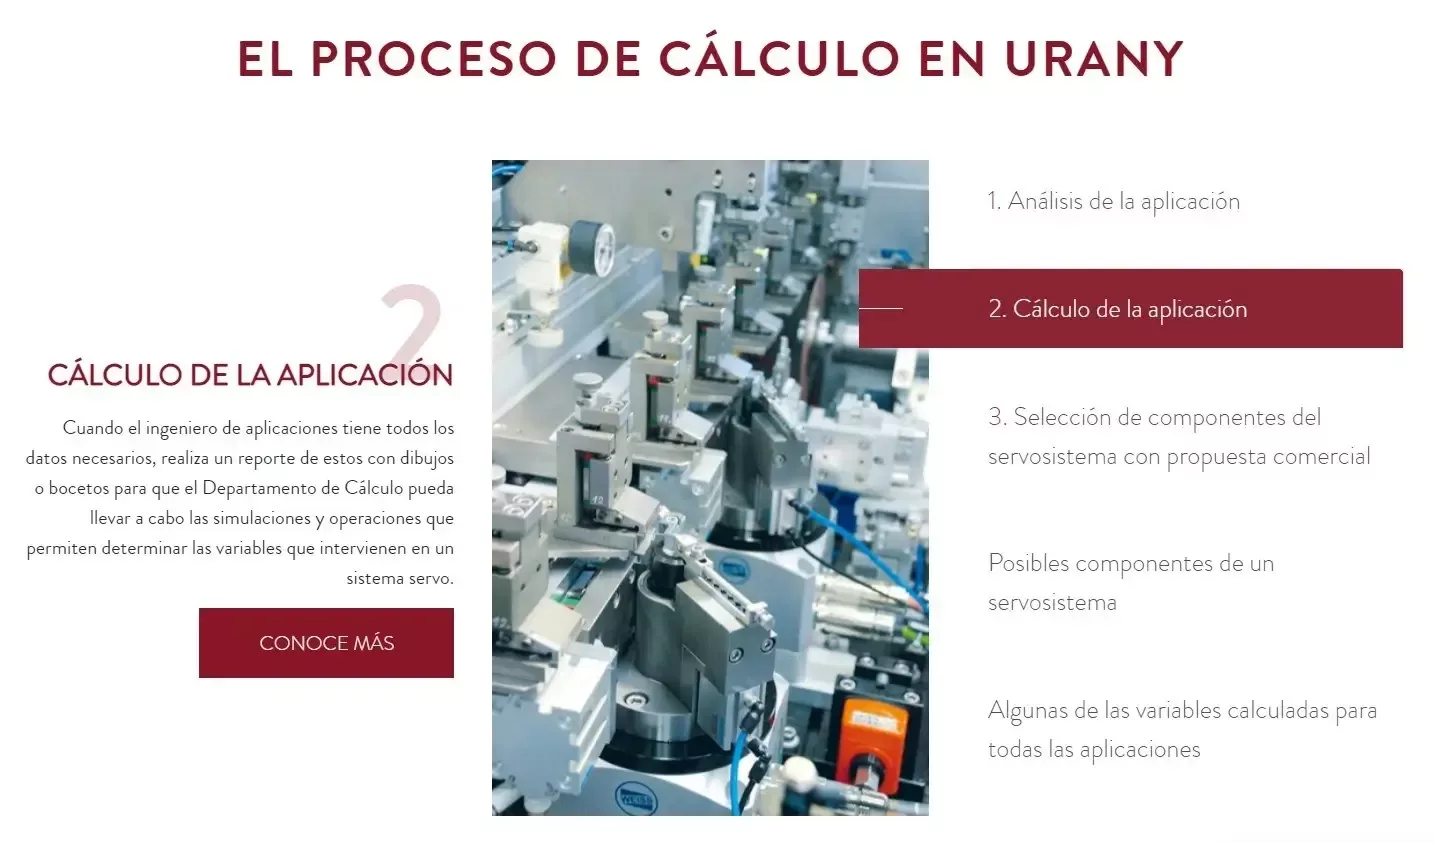 Proceso de cálculo garantizado por los especialistas de Urany.